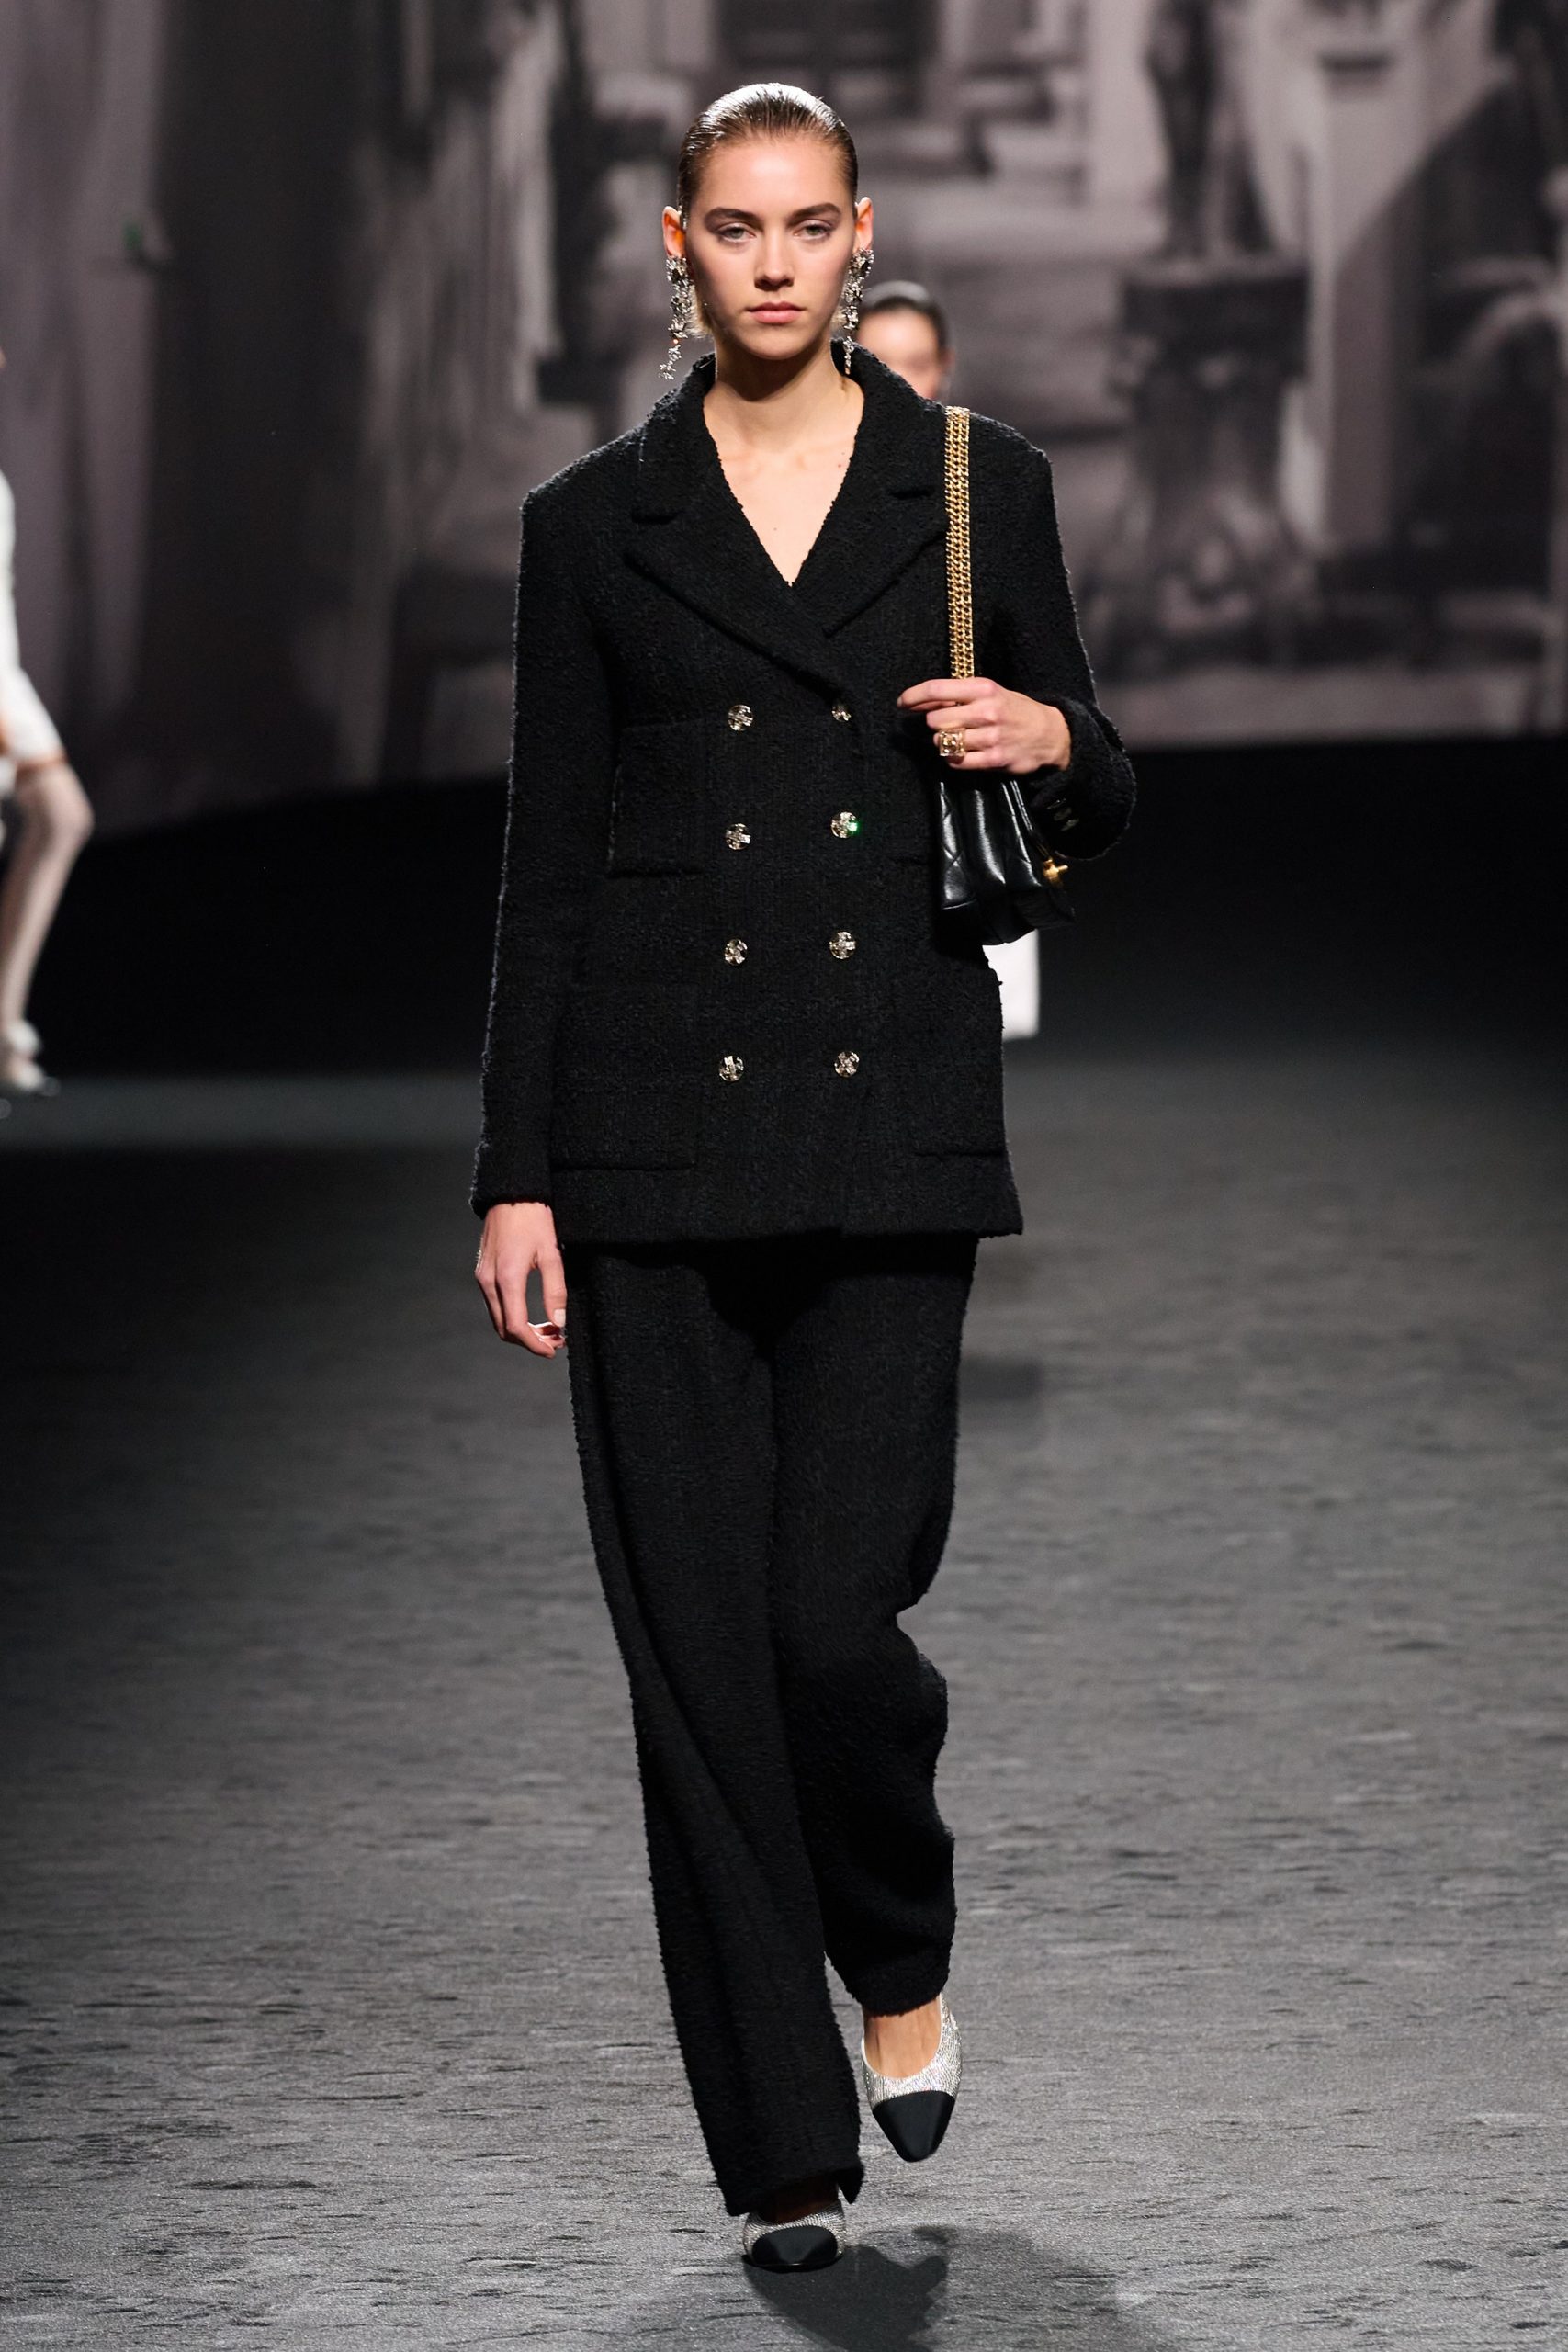 Кристен Стюарт стала лицом весенней коллекции Chanel